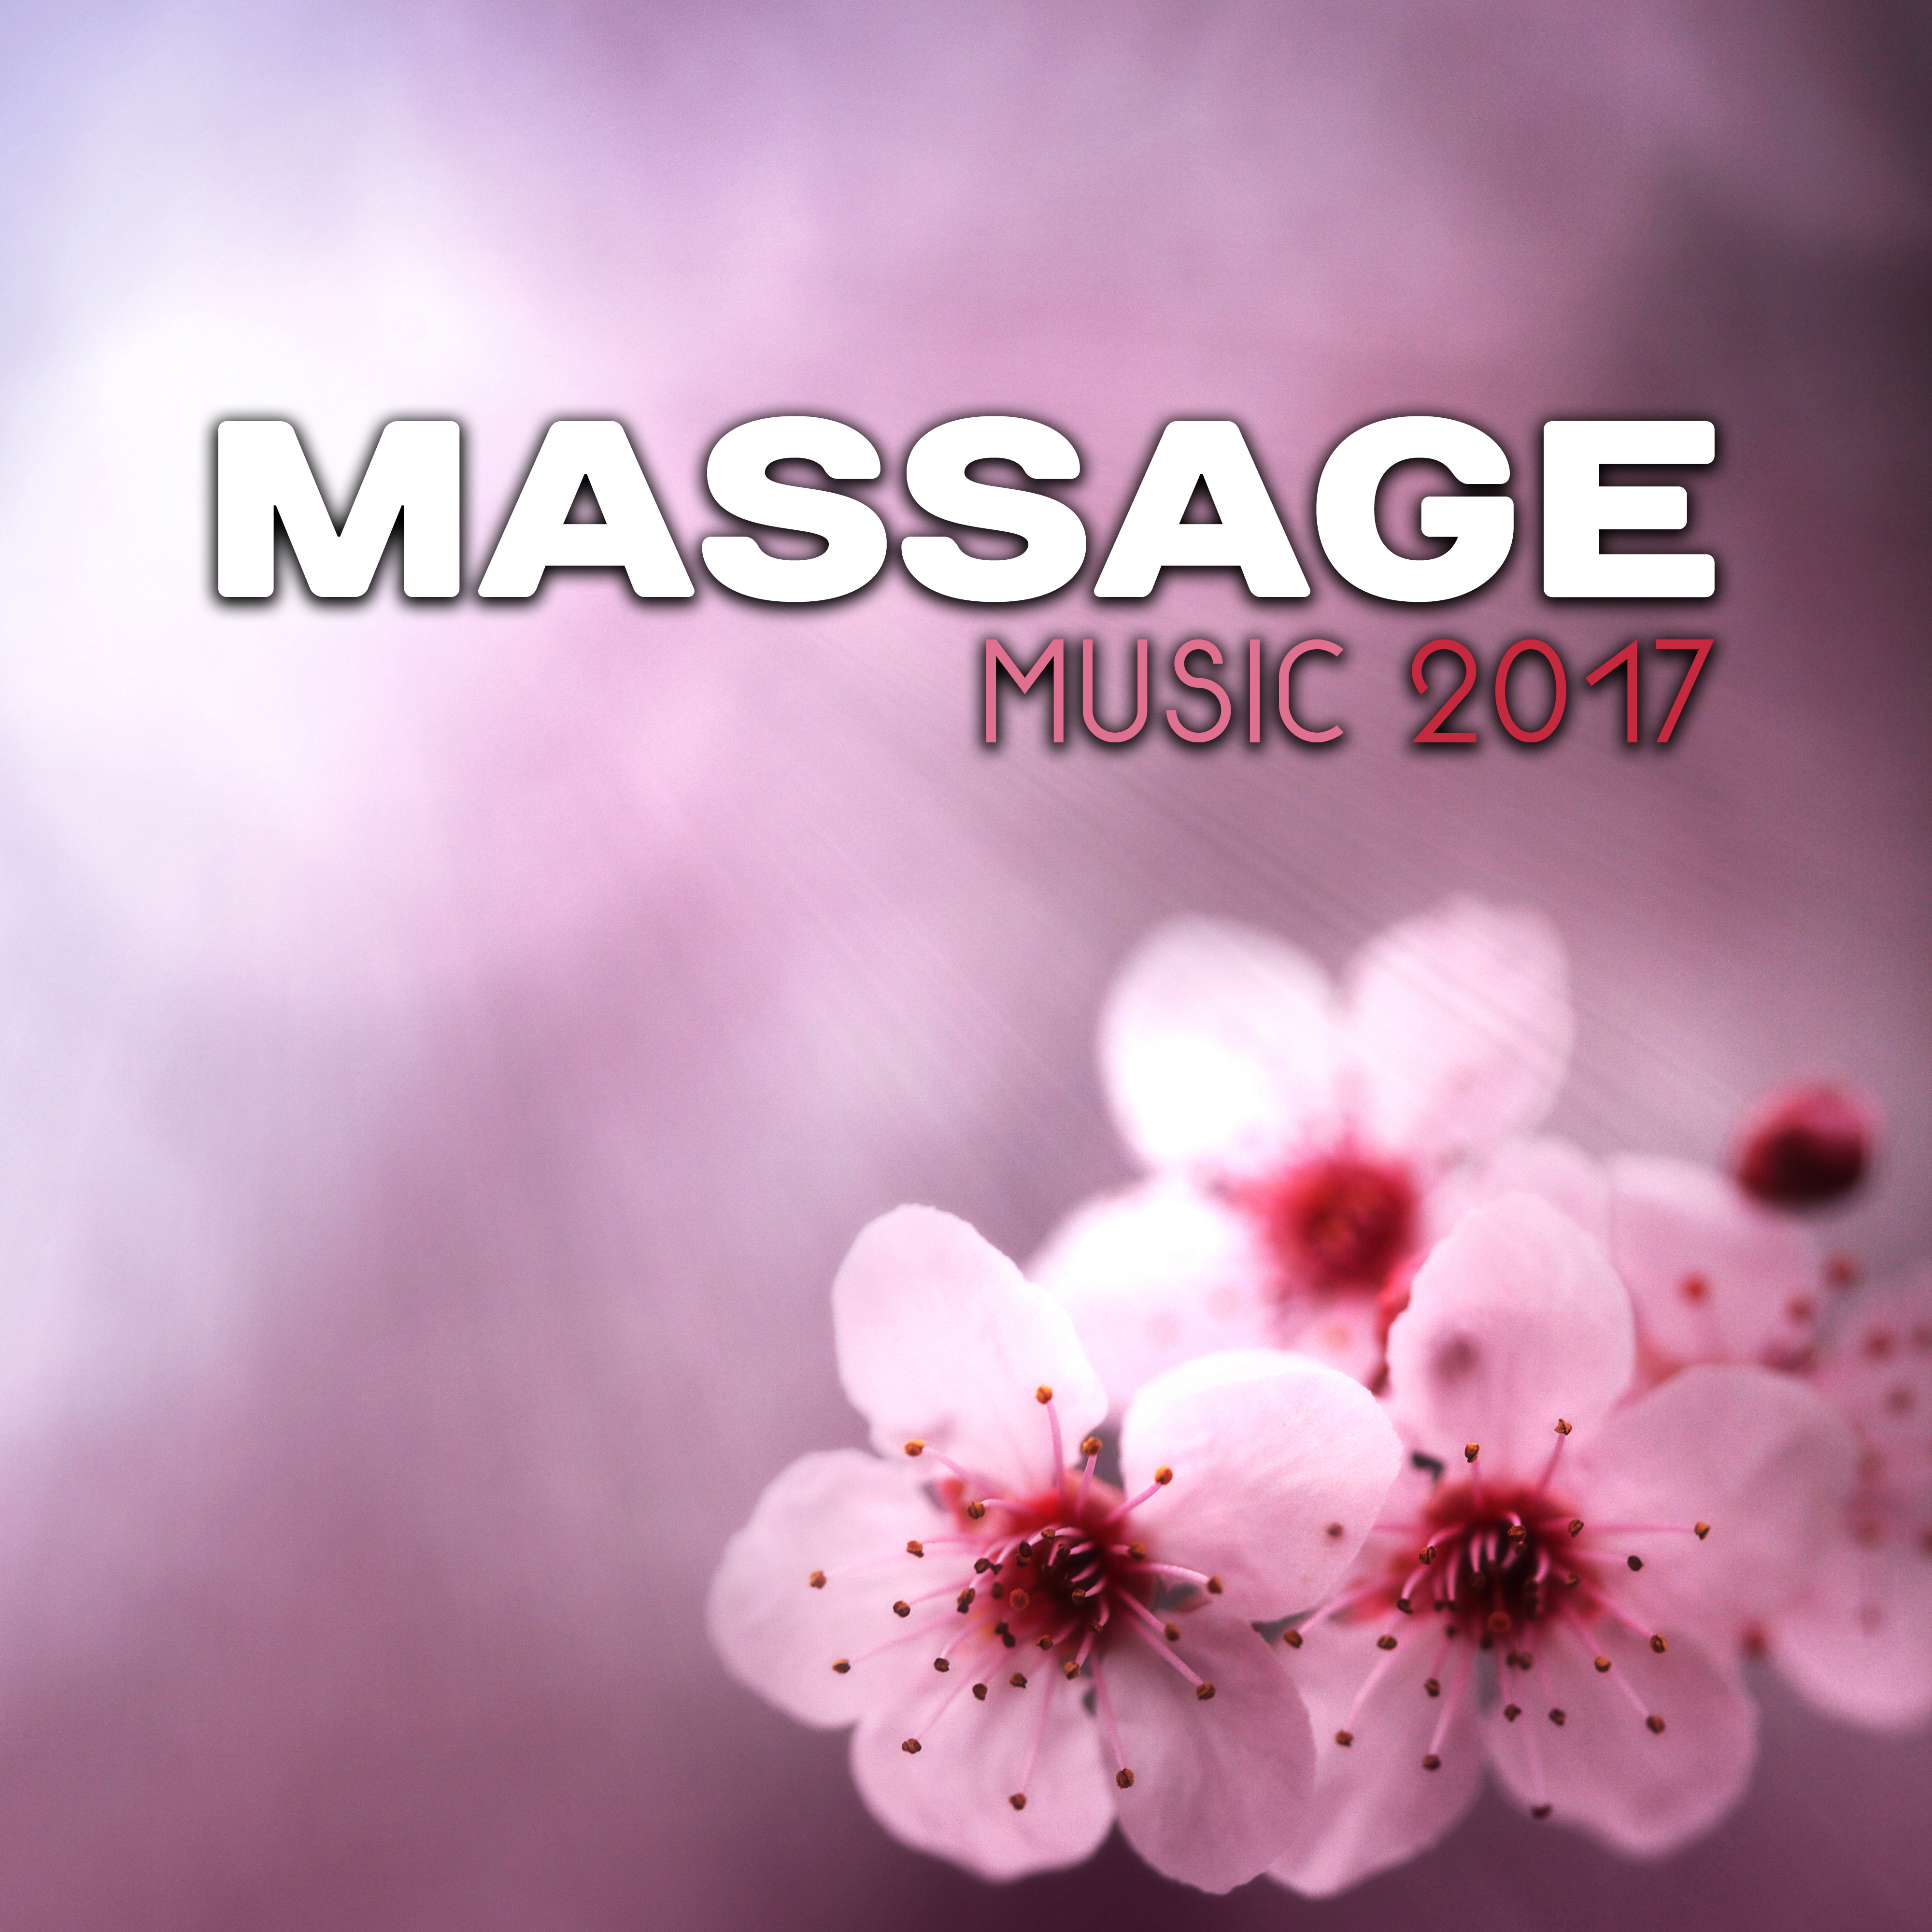 Massage Music 2017 – Spa Relaxation, Massage Music, Deep Nature Sounds, Wellness, Healing Bliss